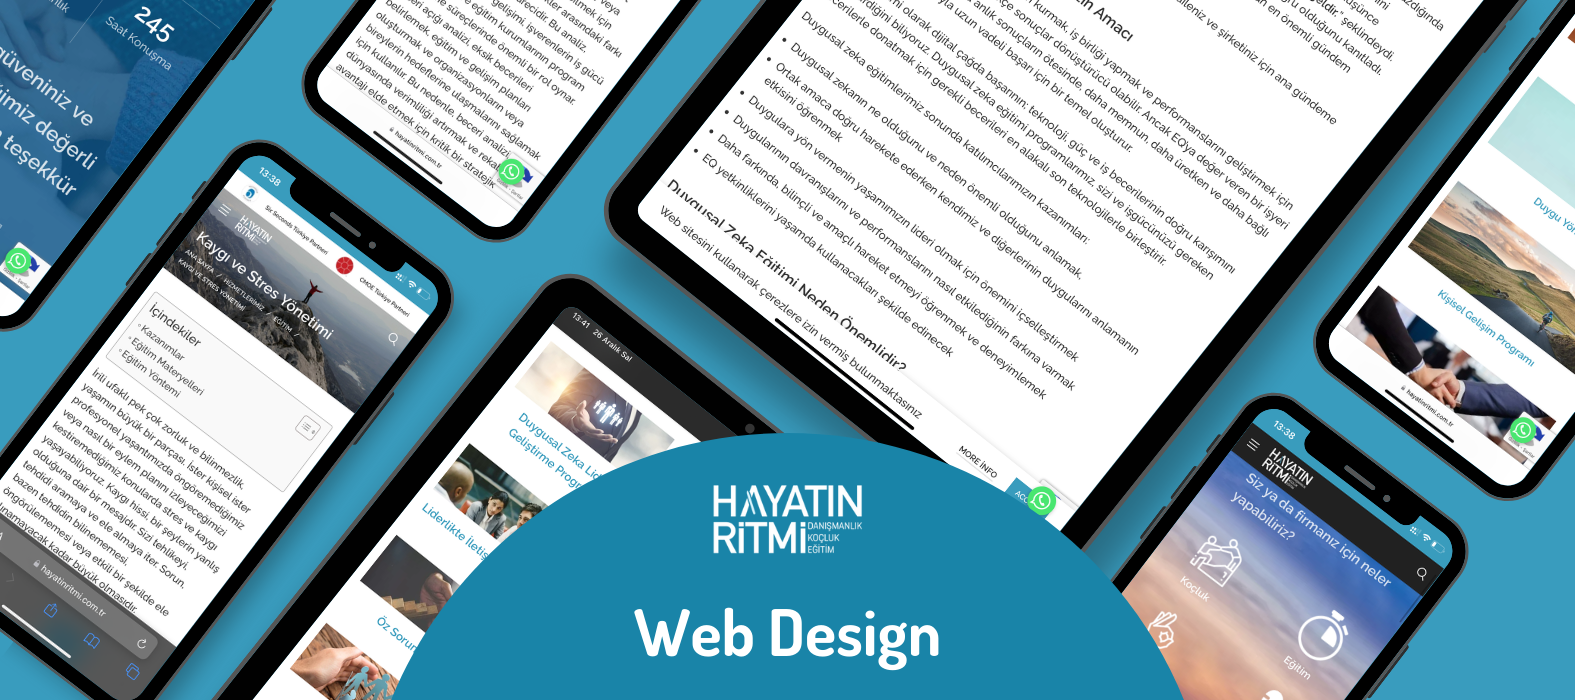 hayatin ritmi web design